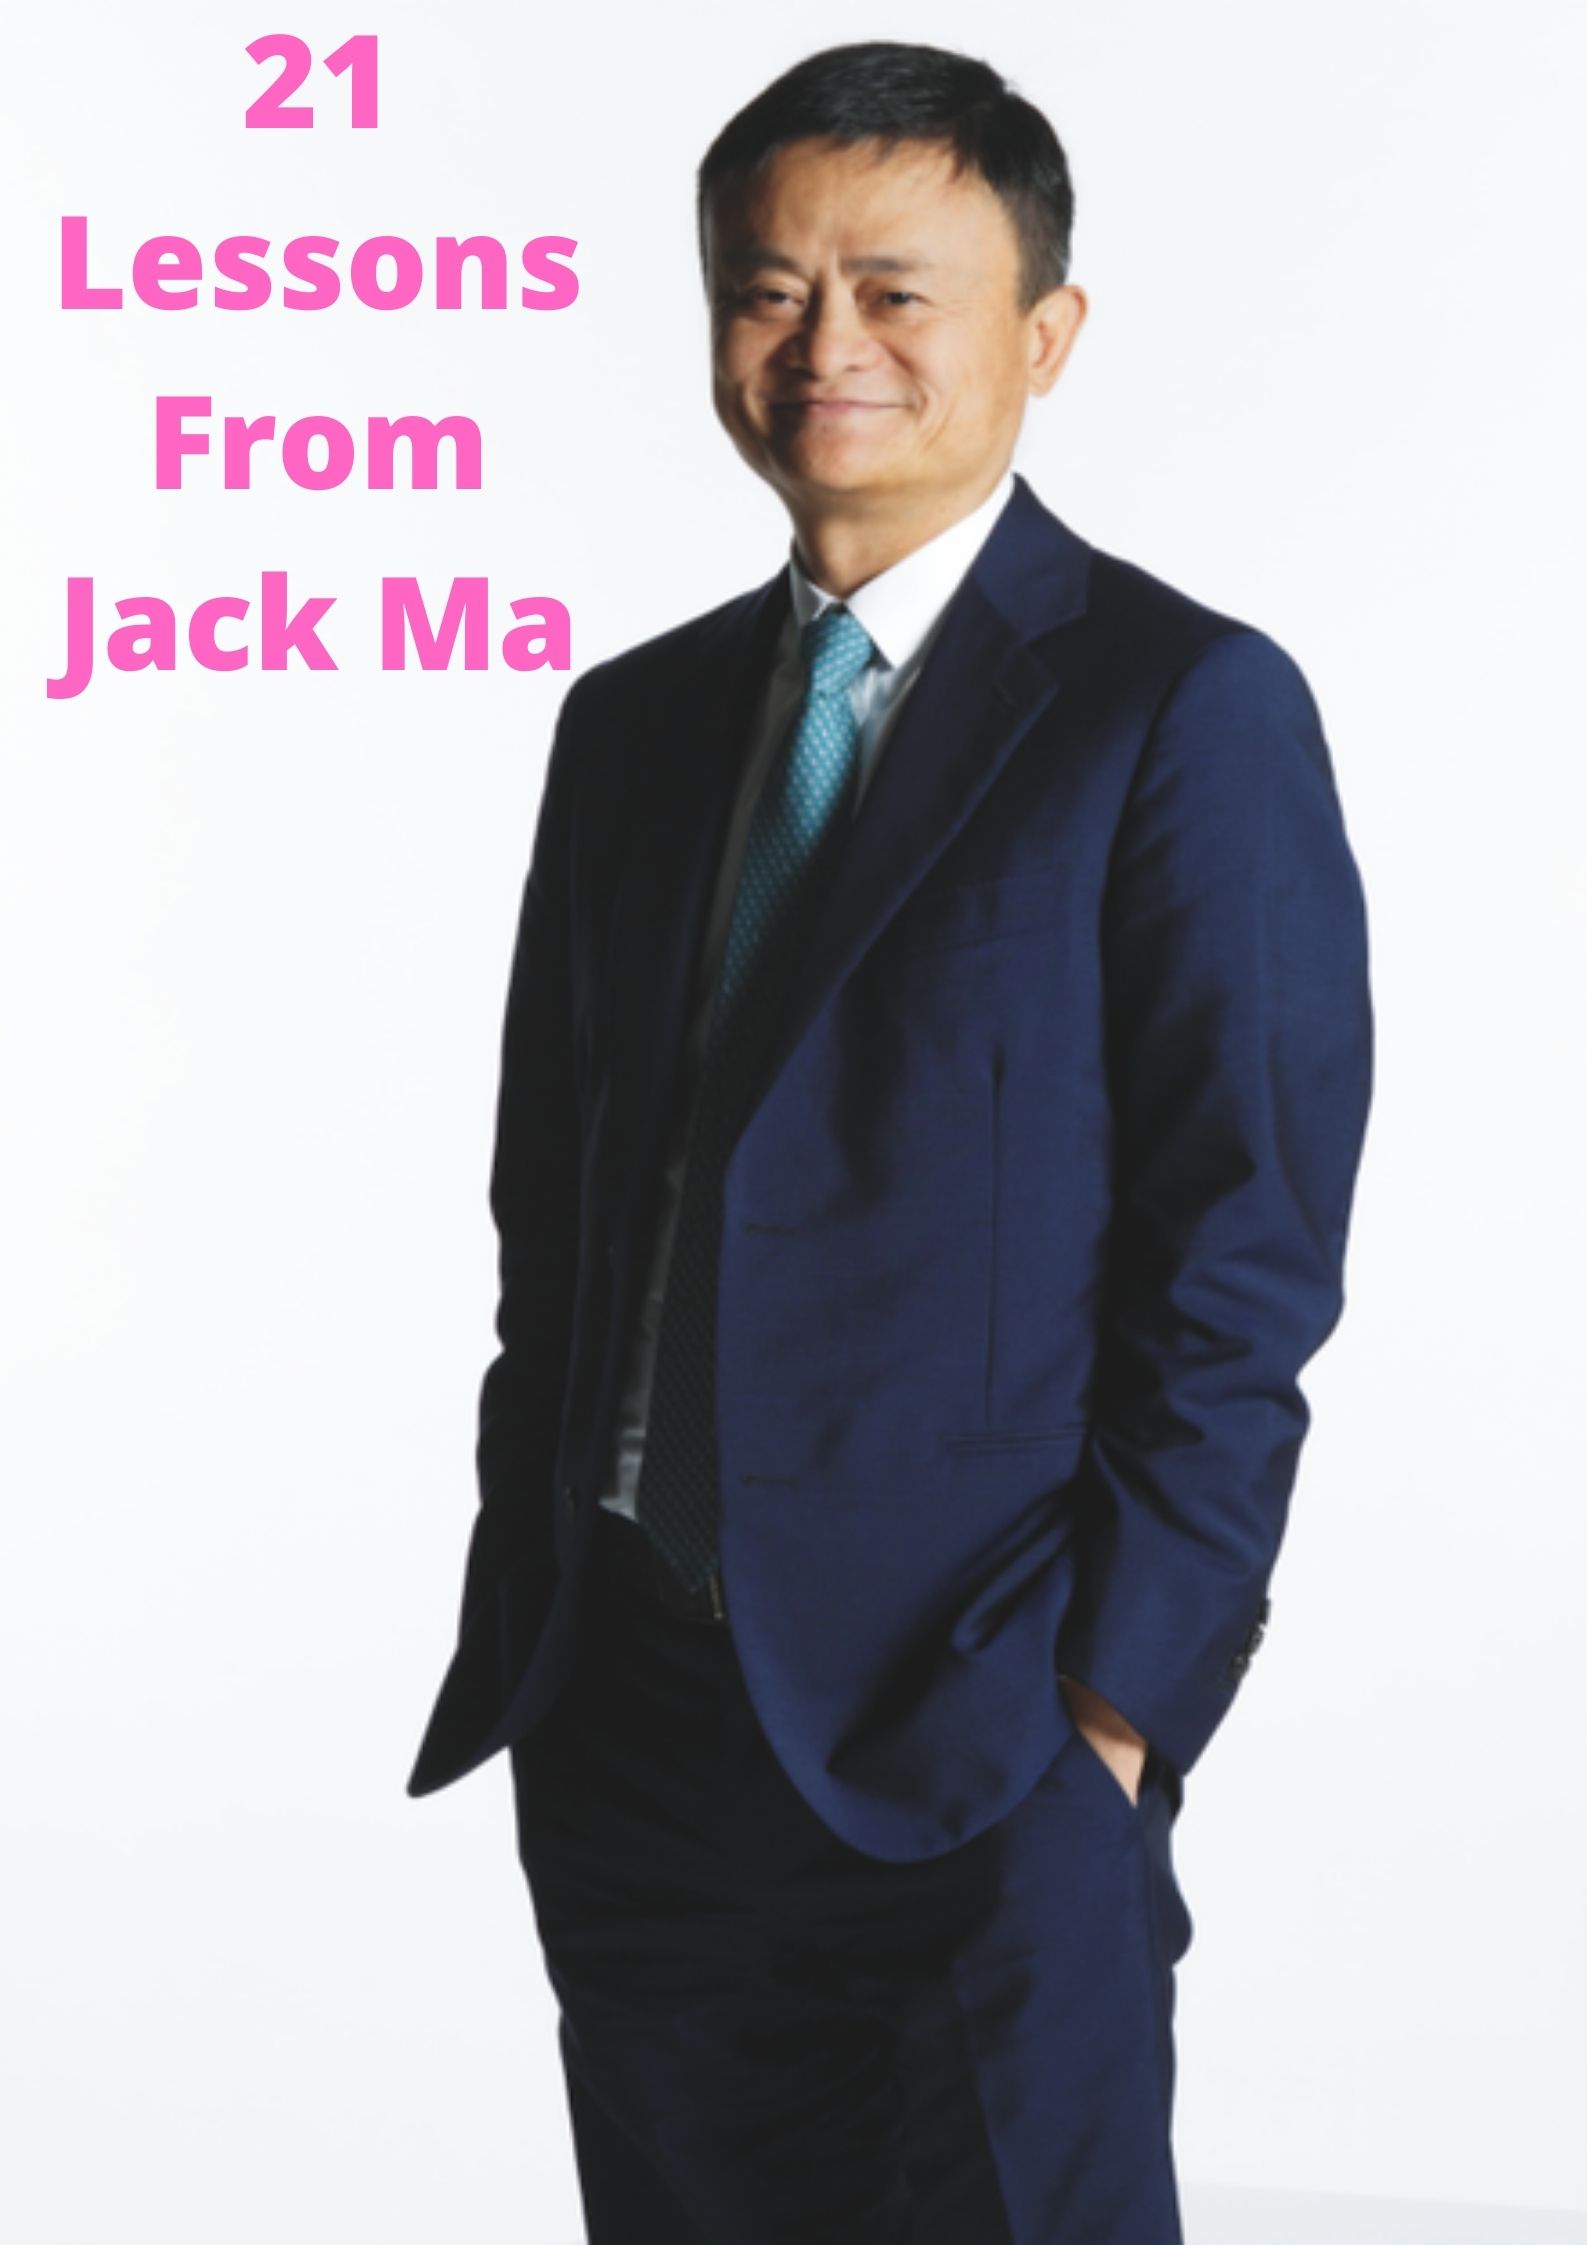 Jack Ma Photo